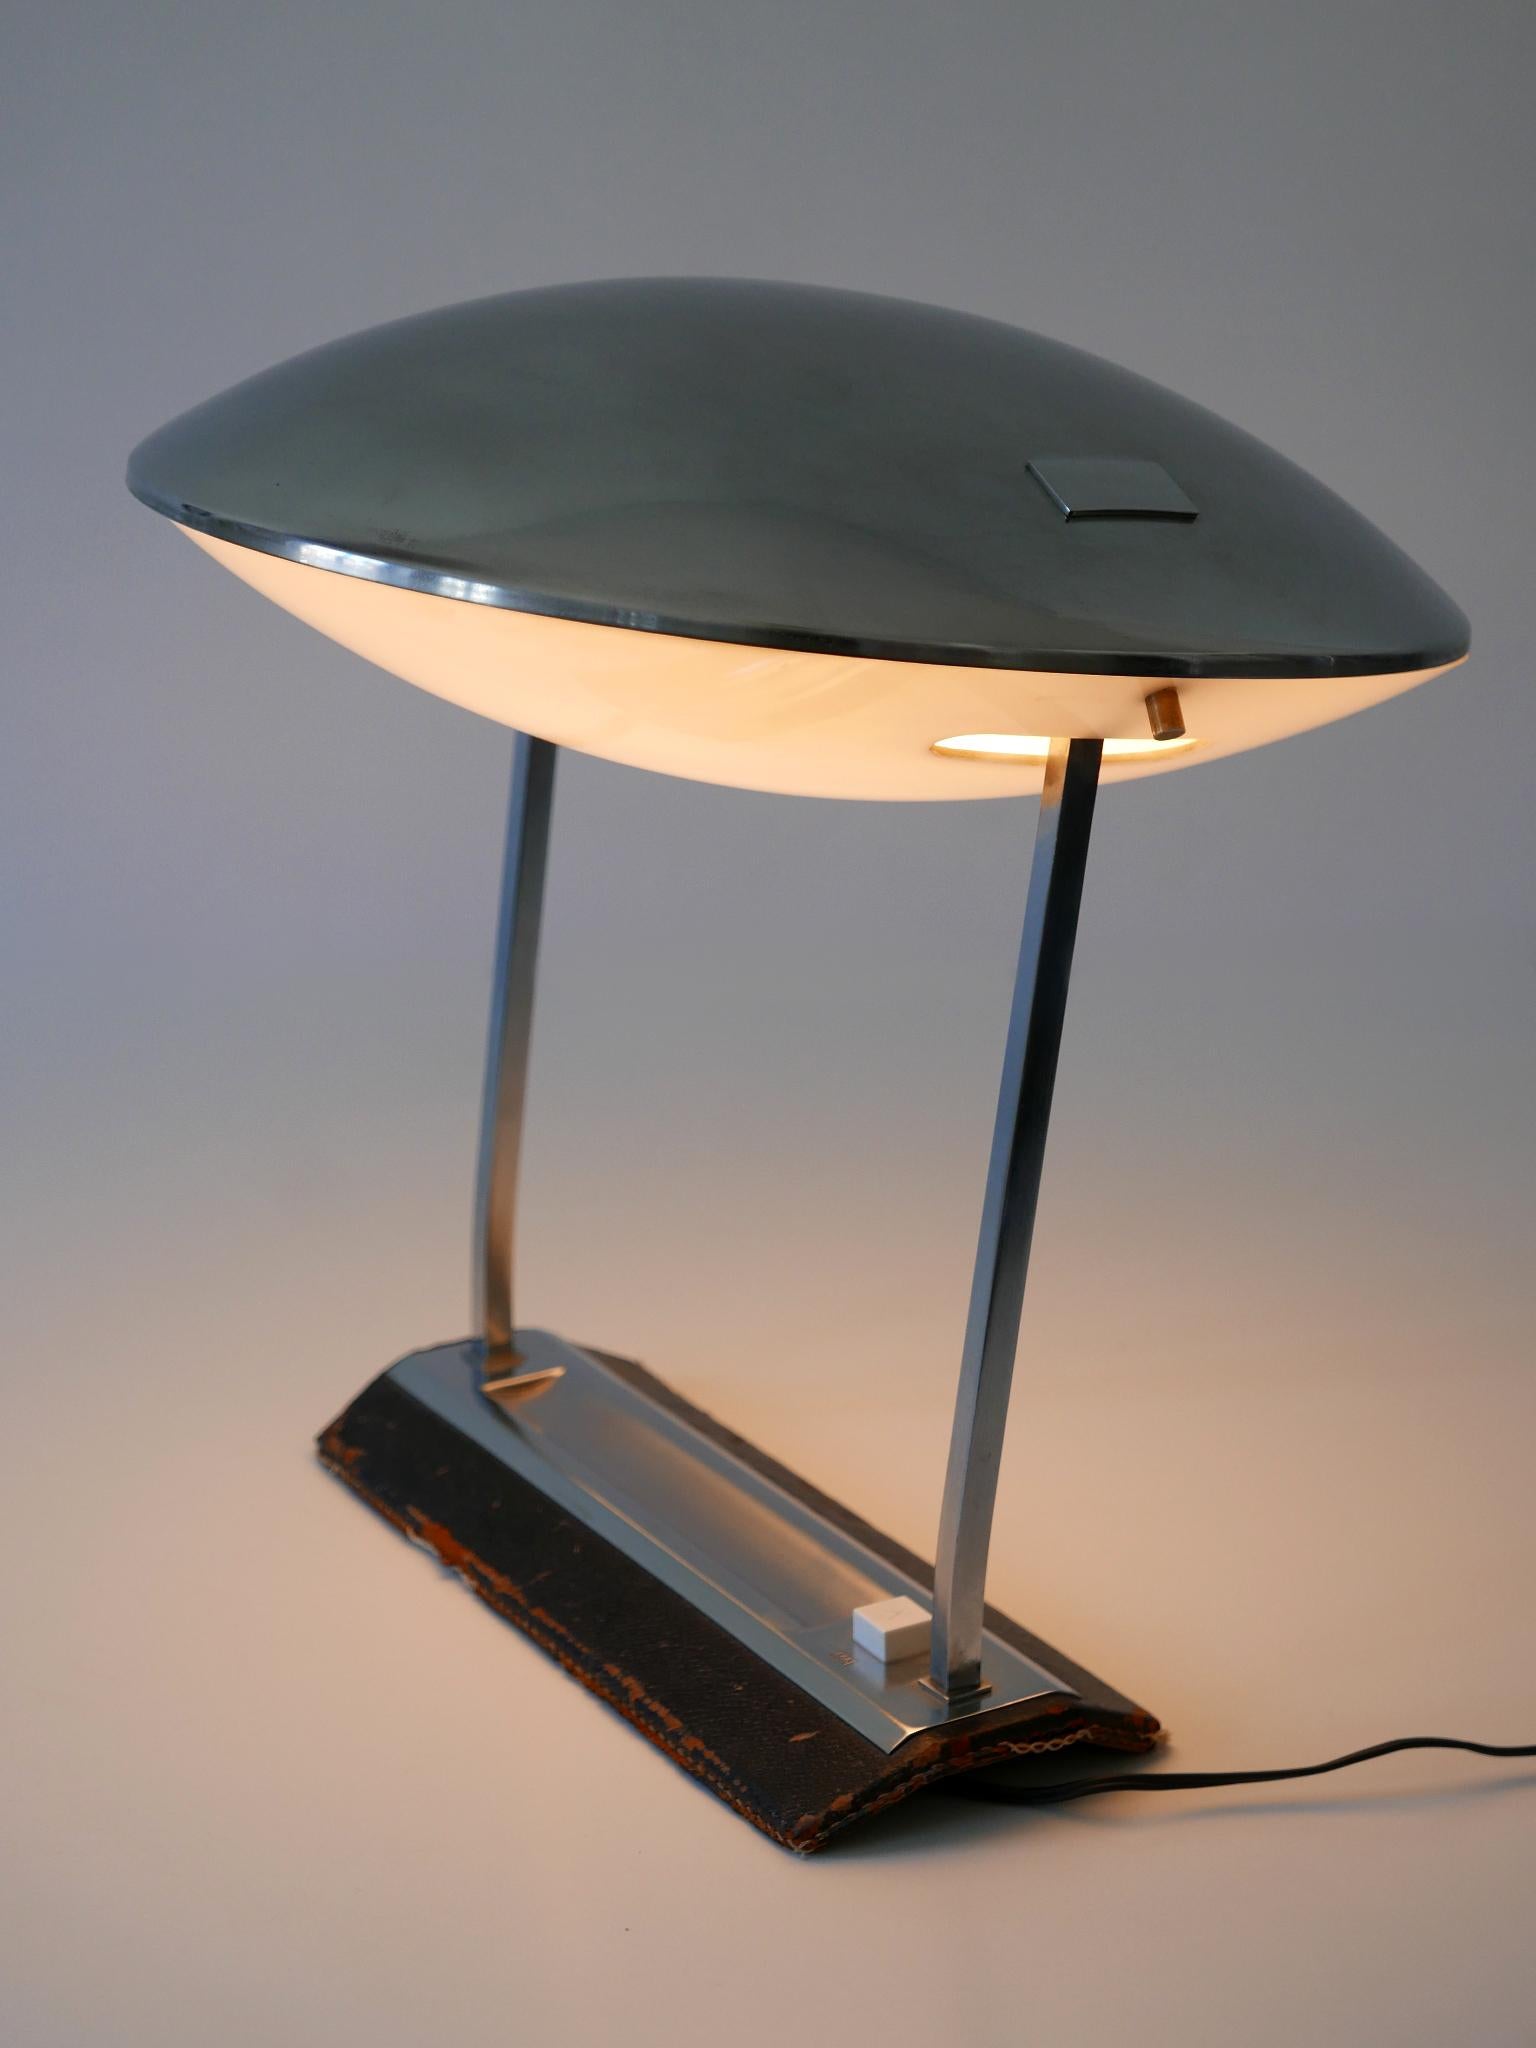 Rare Mid Century Modern Stilnovo Desk Lamp Model 8050 Metalarte 1960s For Sale 6